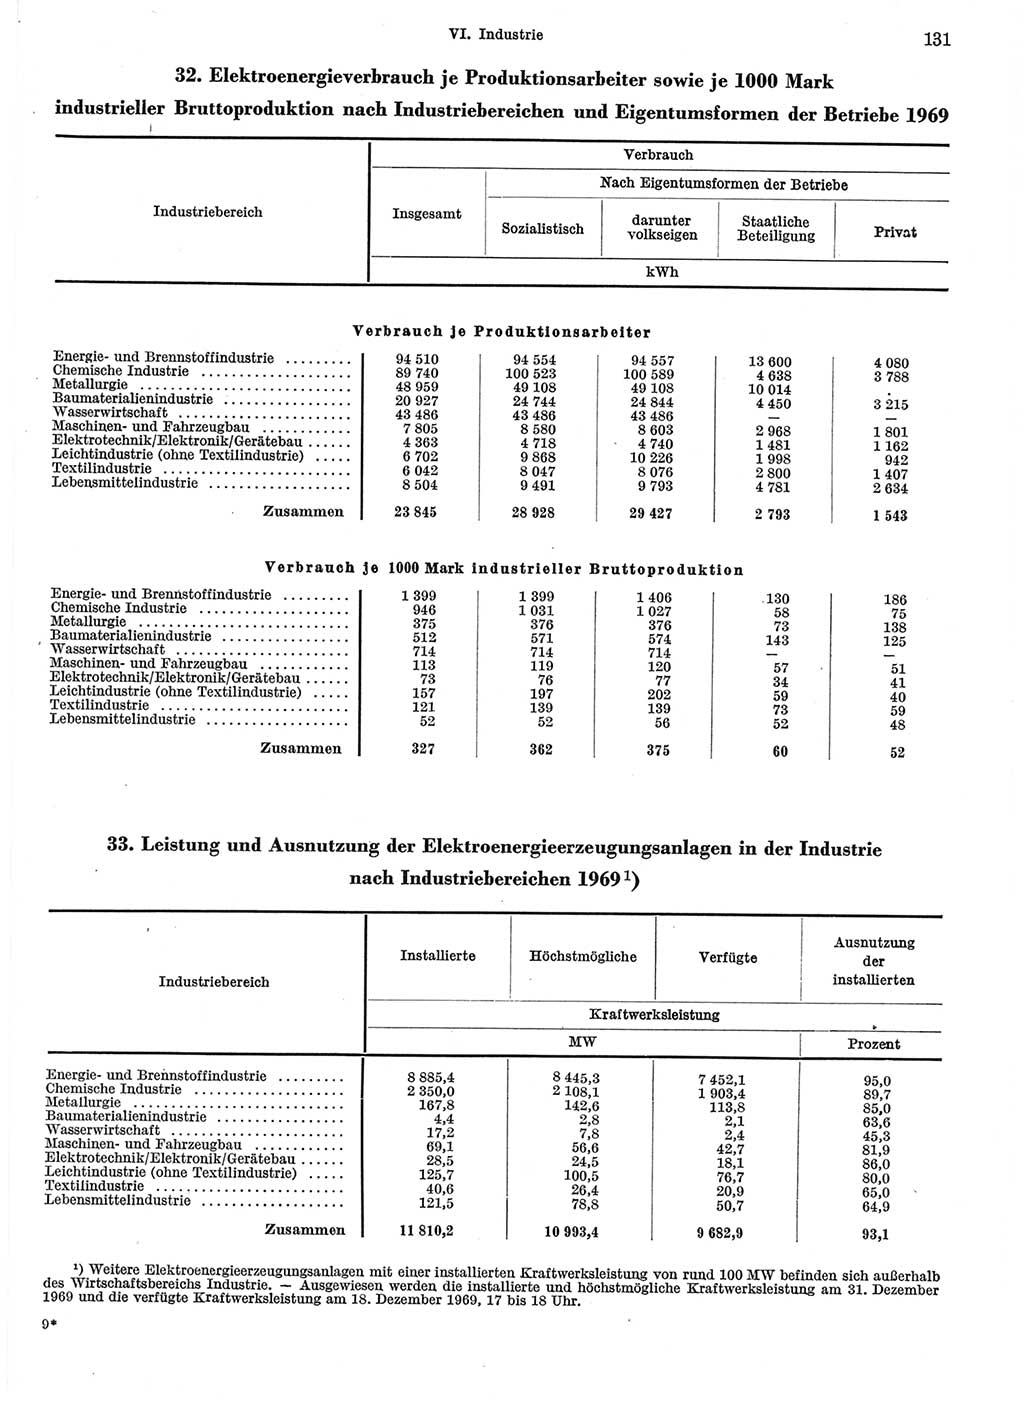 Statistisches Jahrbuch der Deutschen Demokratischen Republik (DDR) 1970, Seite 131 (Stat. Jb. DDR 1970, S. 131)